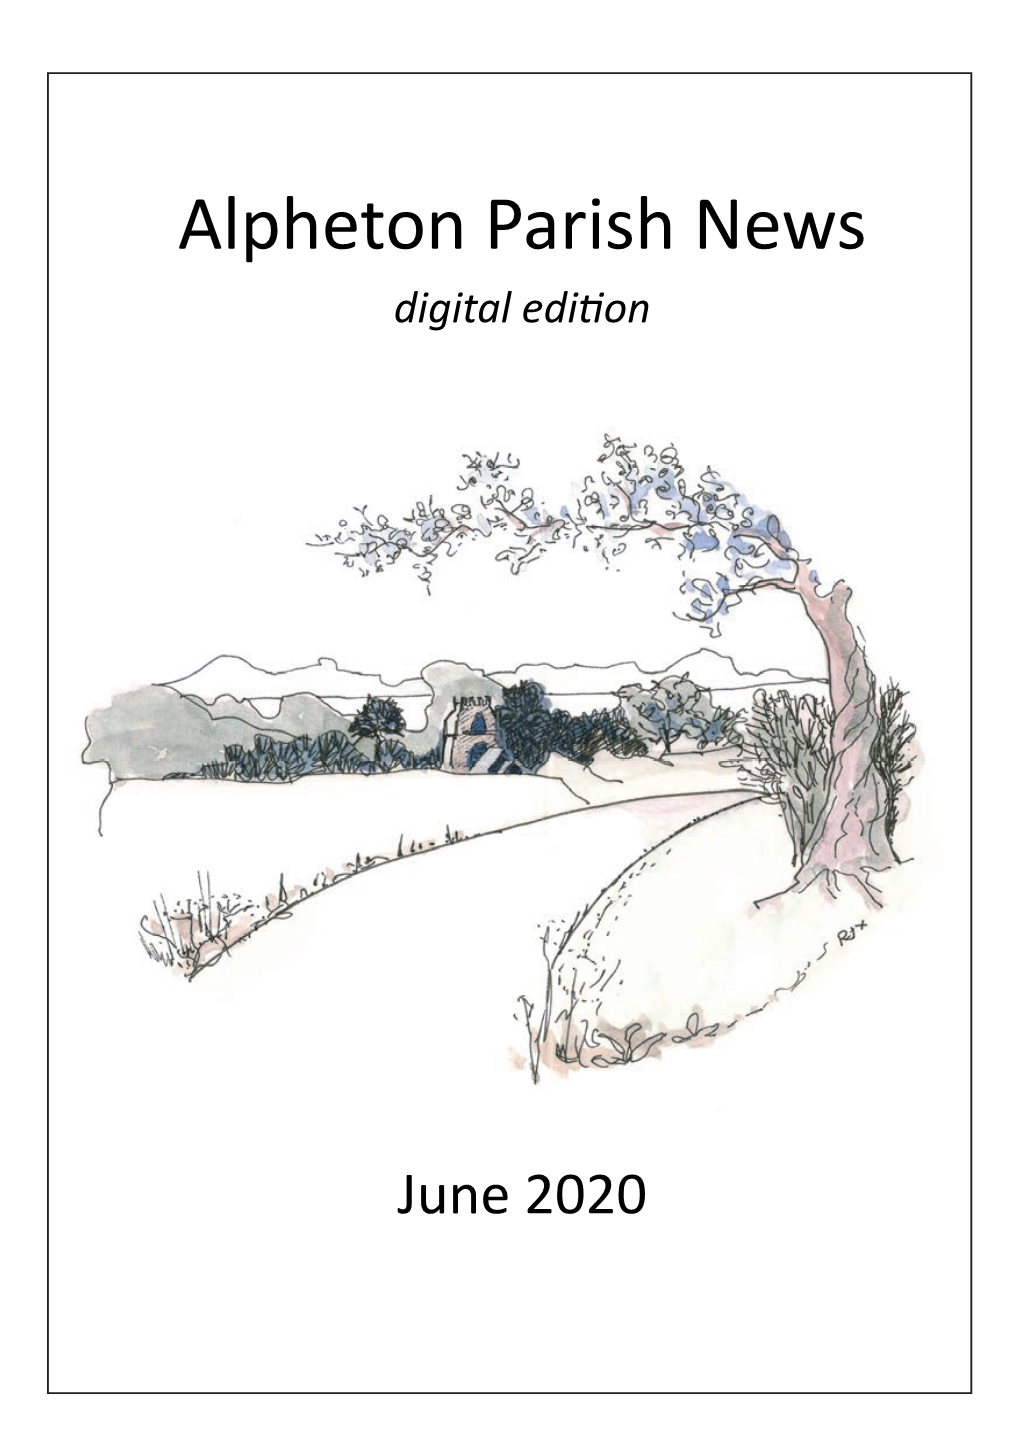 Parish Magazine June 2020 Working Copy.Pub